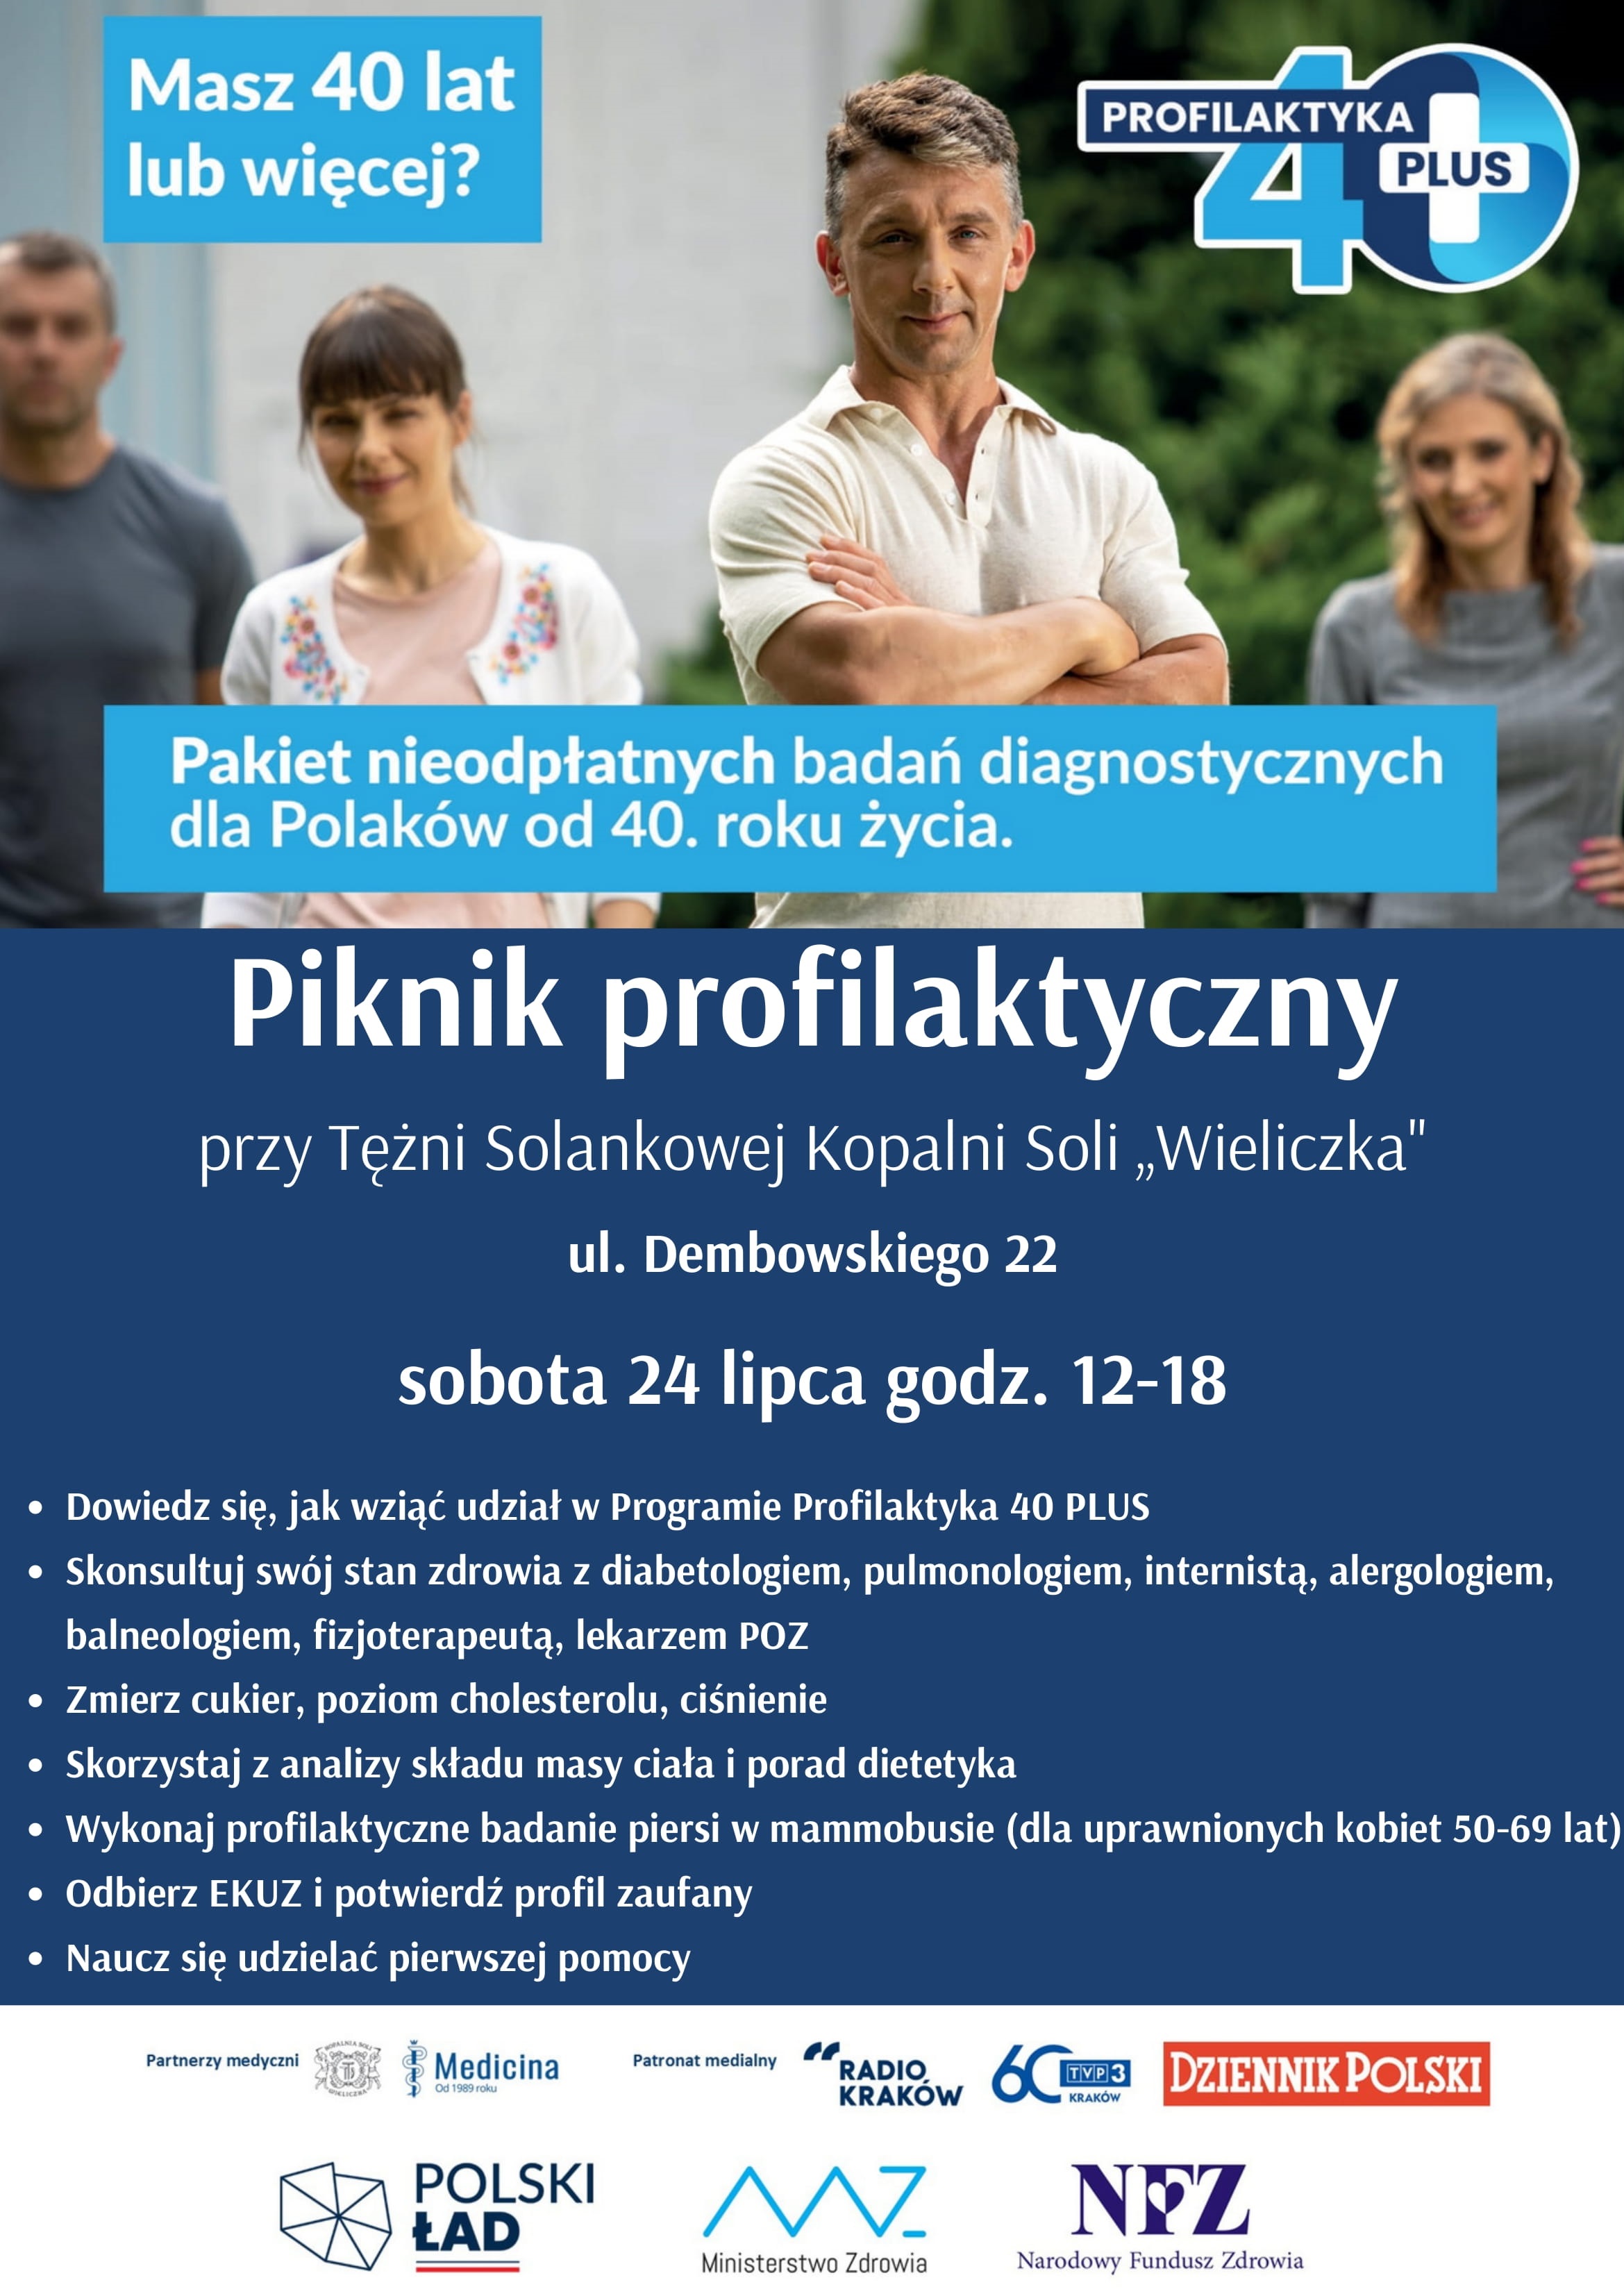 Plakat promujący piknik profilaktyczny